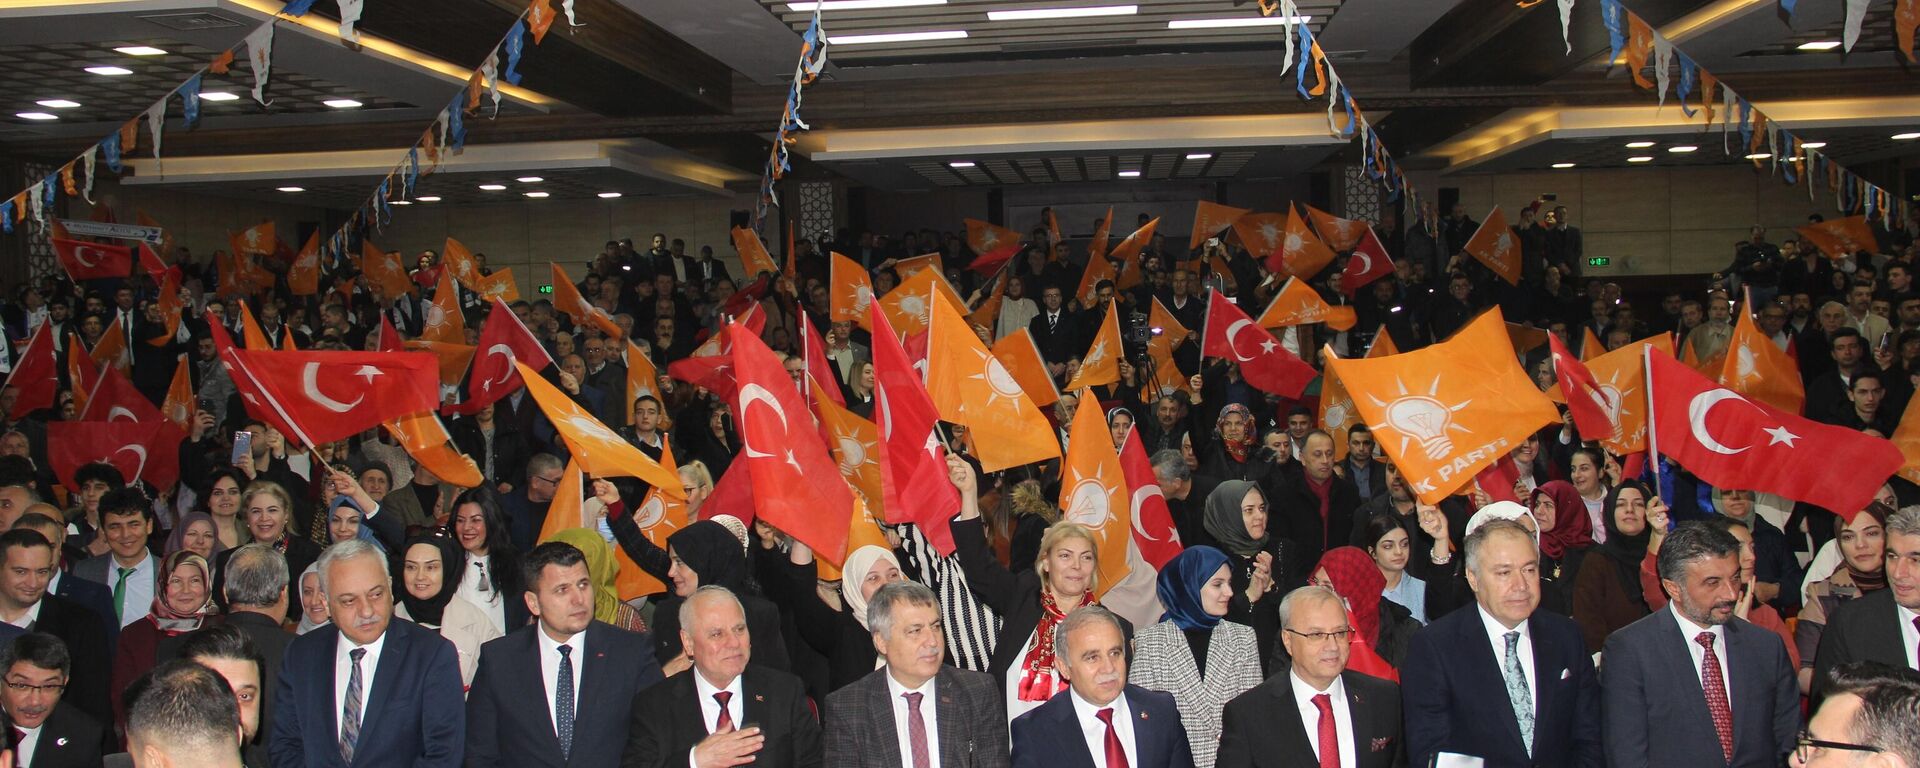 Manisa'da AK Parti İl Teşkilatı tarafından belediye başkan adaylarının tanıtımı yapıldı. Tanıtımda AK Parti'nin 11 ilçe belediye başkan adayı ile MHP'nin 6 ilçe ve Büyükşehir Belediye Başkan adayları salonu dolduran coşkulu kalabalık tarafından uzun süre alkışlandı. - Sputnik Türkiye, 1920, 10.02.2024